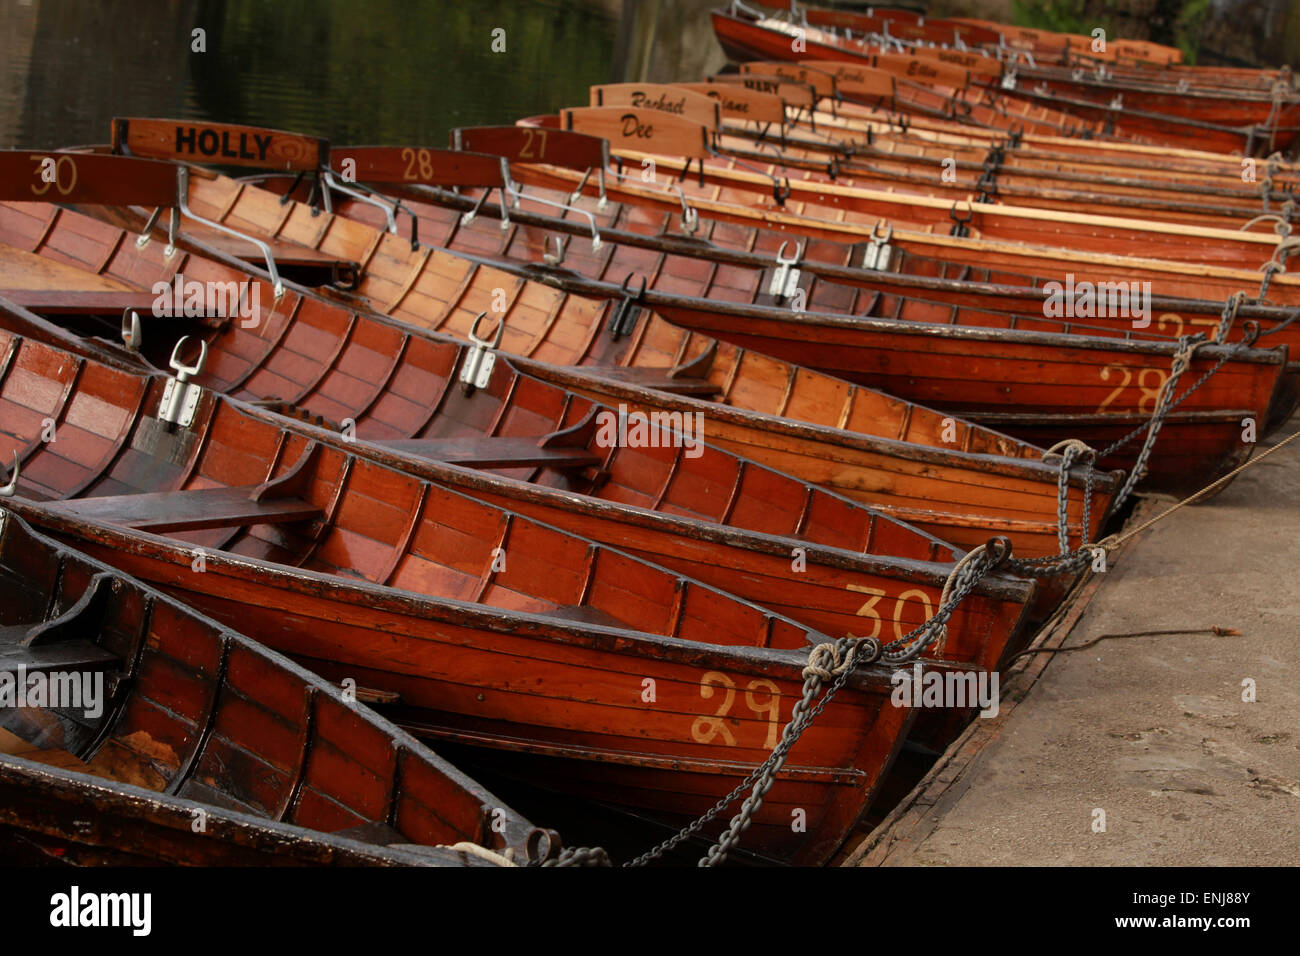 Clásico de madera de botes a remo en el río desgaste por puente Elvet Durham UK Foto de stock